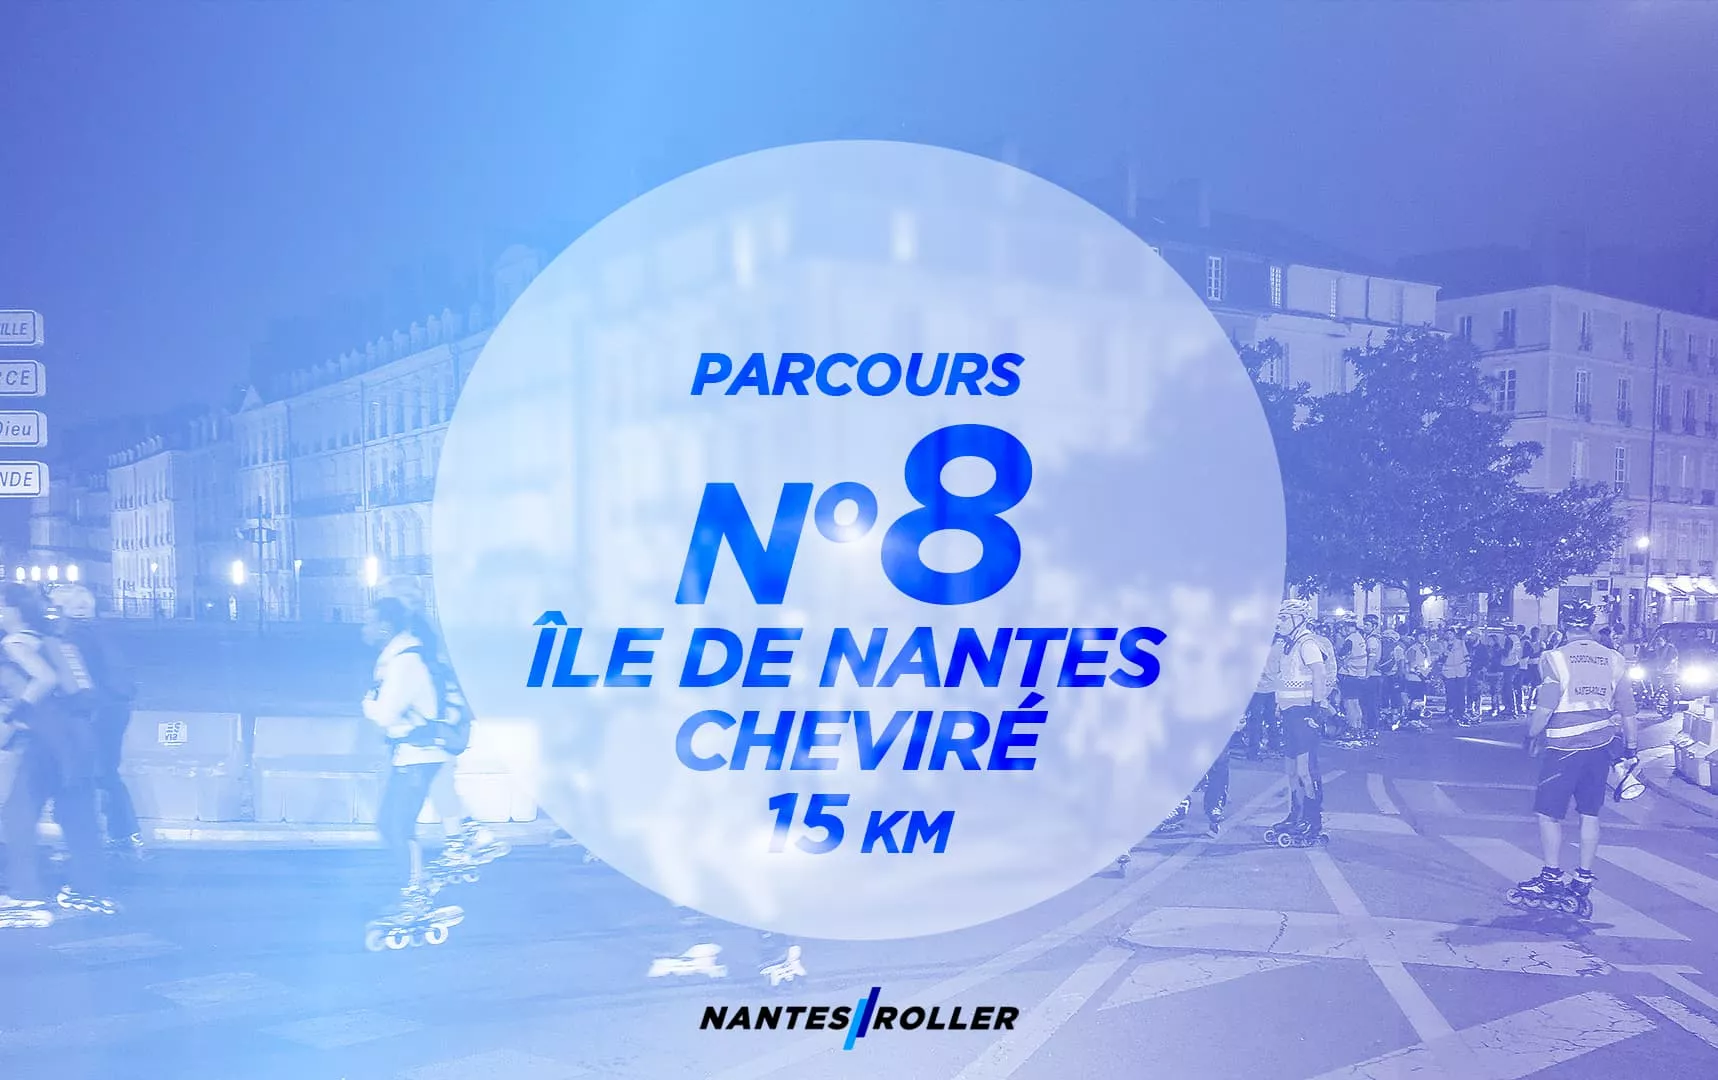 Représentation du parcours NR 08 – Île de Nantes – Cheviré